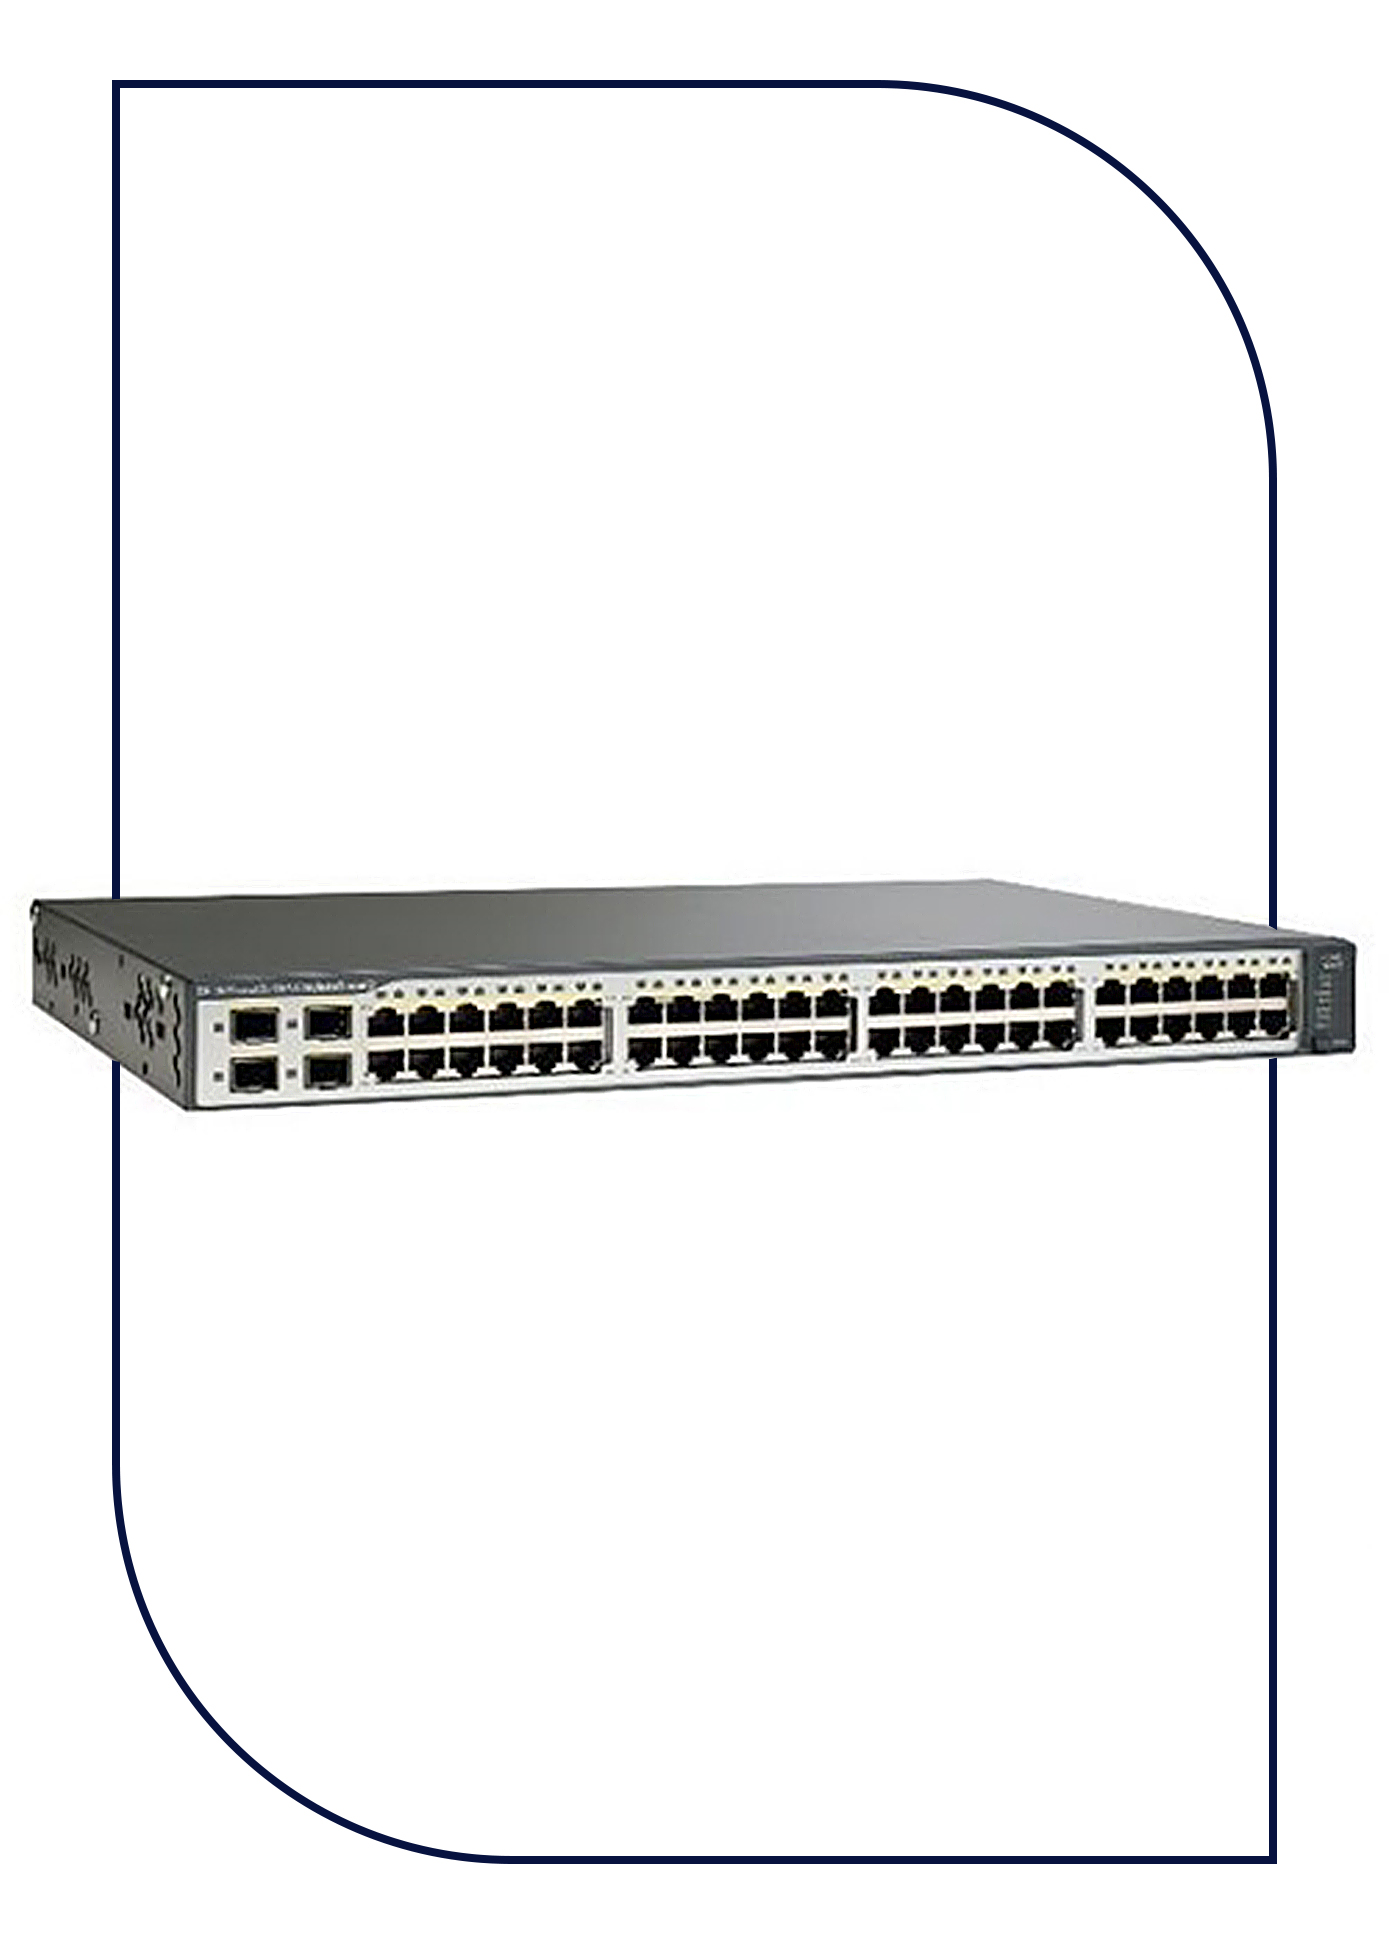 Cisco ws-c3750v2-48ps-e 48 Ethernet 10/100 porte and 4 SFP-based Switch Gigabit 